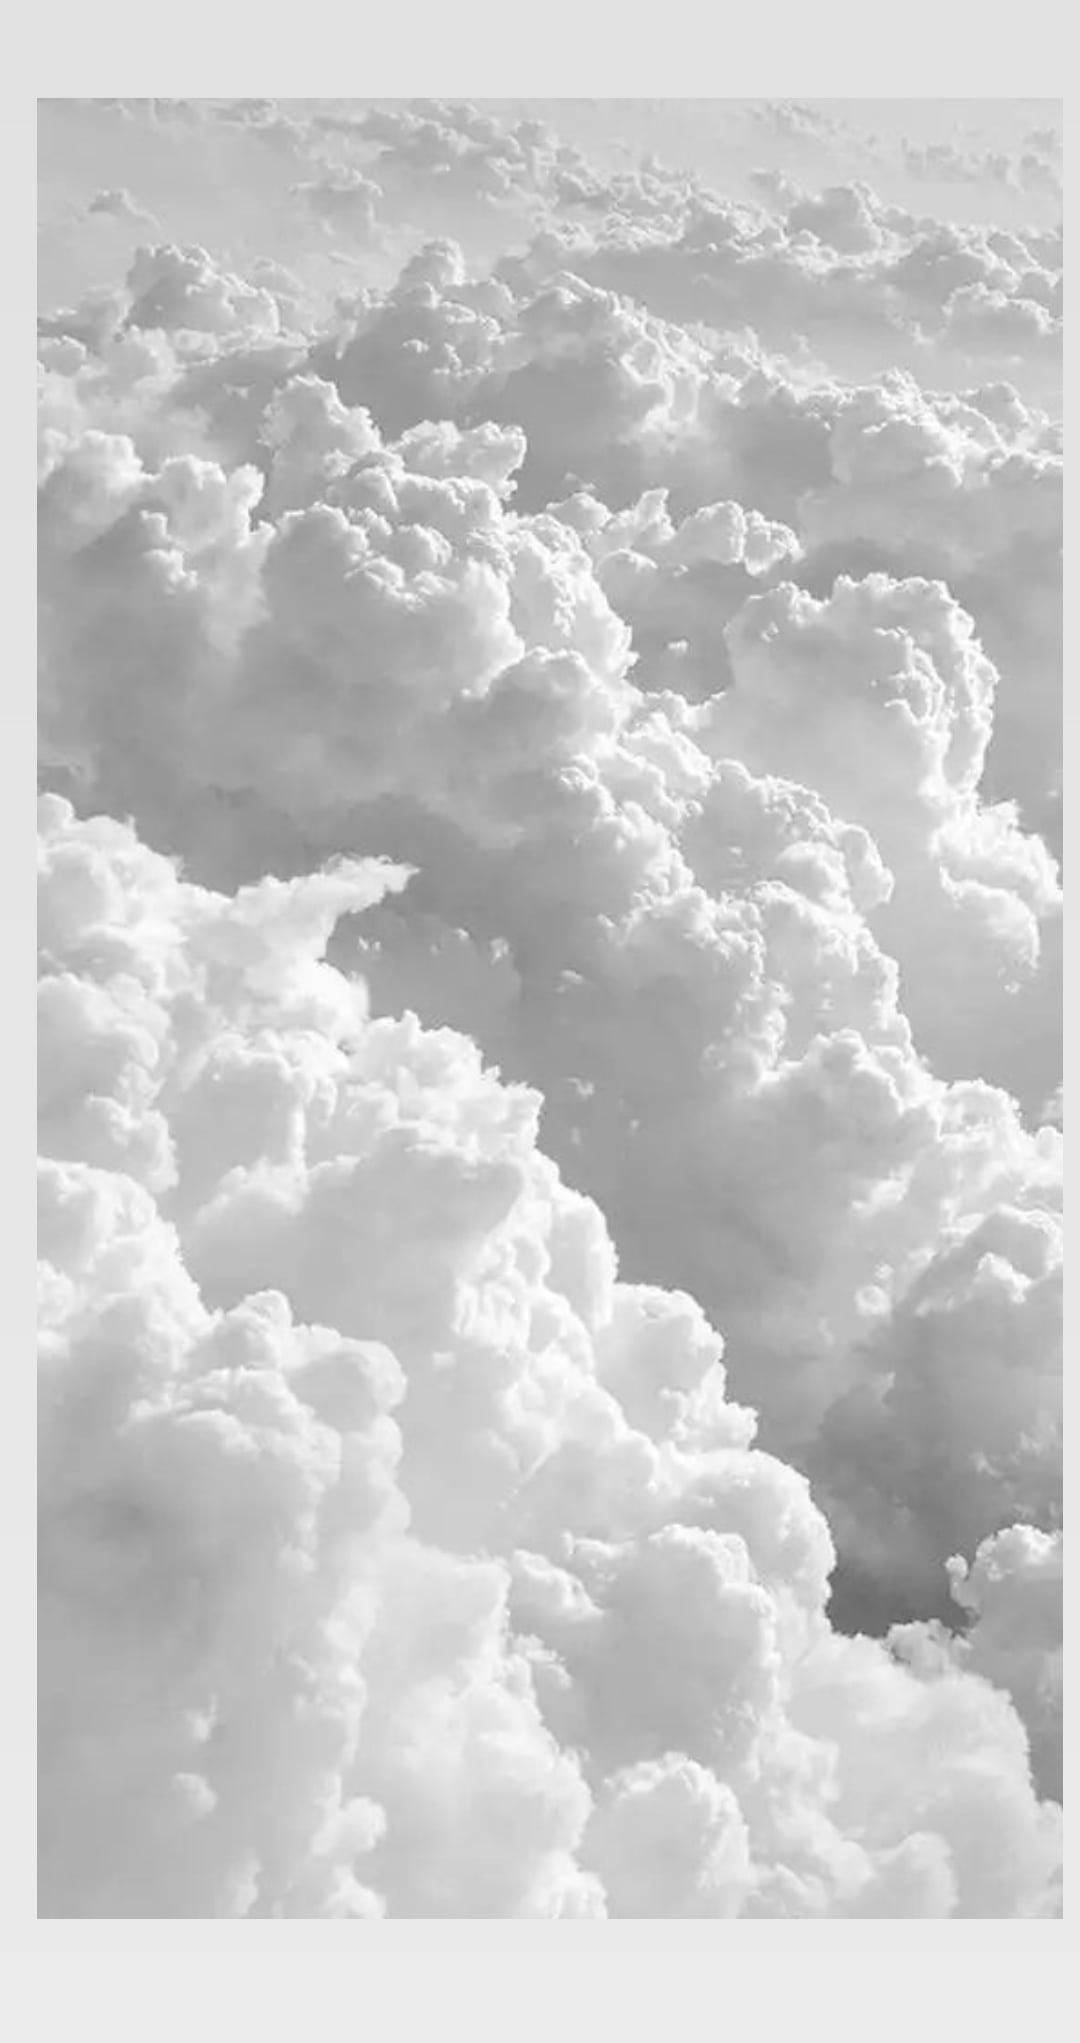 Ästhetischeiphone X Weiße Wolken Wallpaper